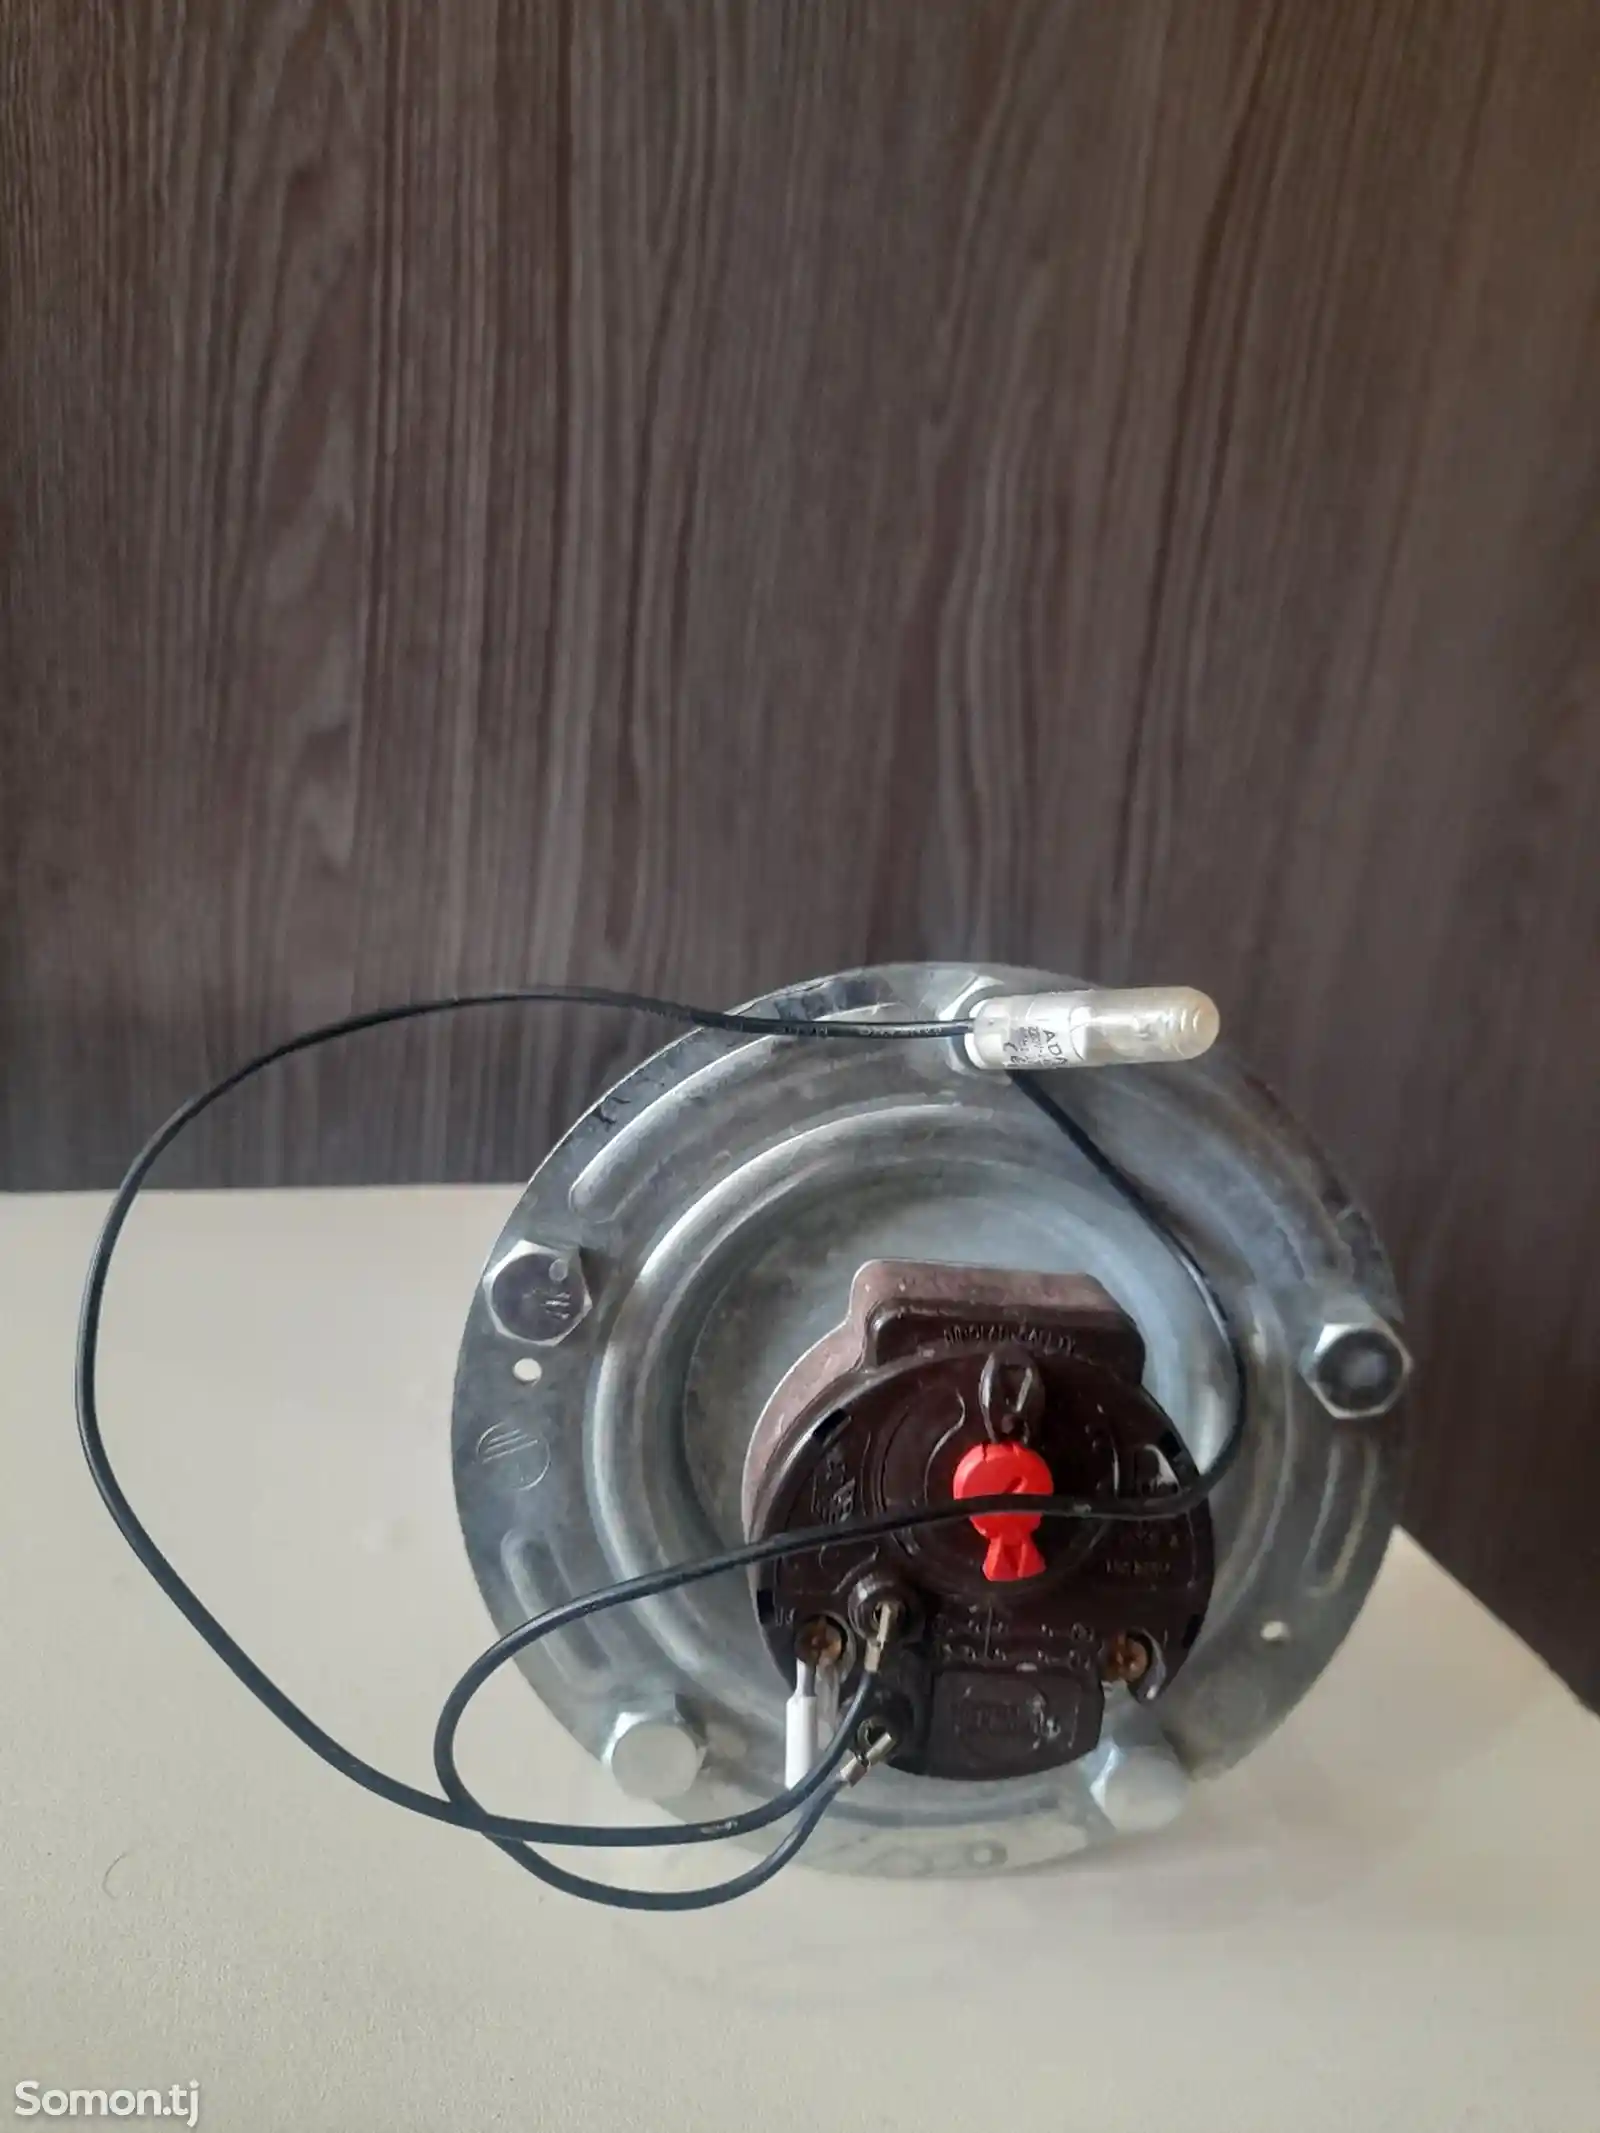 Тен с термостатом от водонагревателя-3